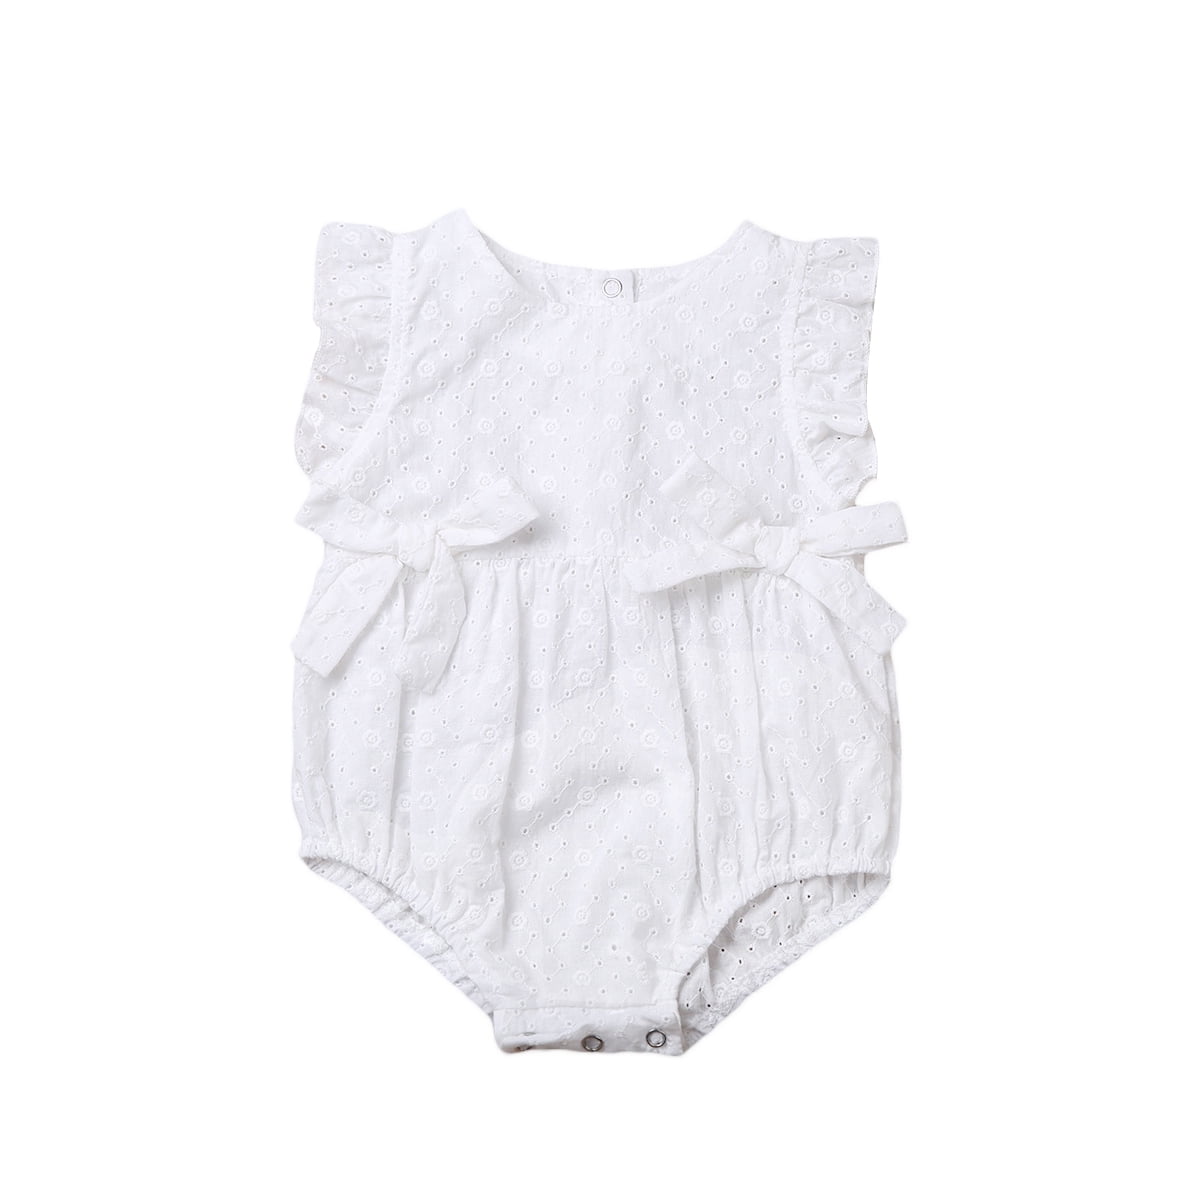 luethbiezx US Newborn Infant Baby Cotton Lace Hollow Romper Bodysuit ...